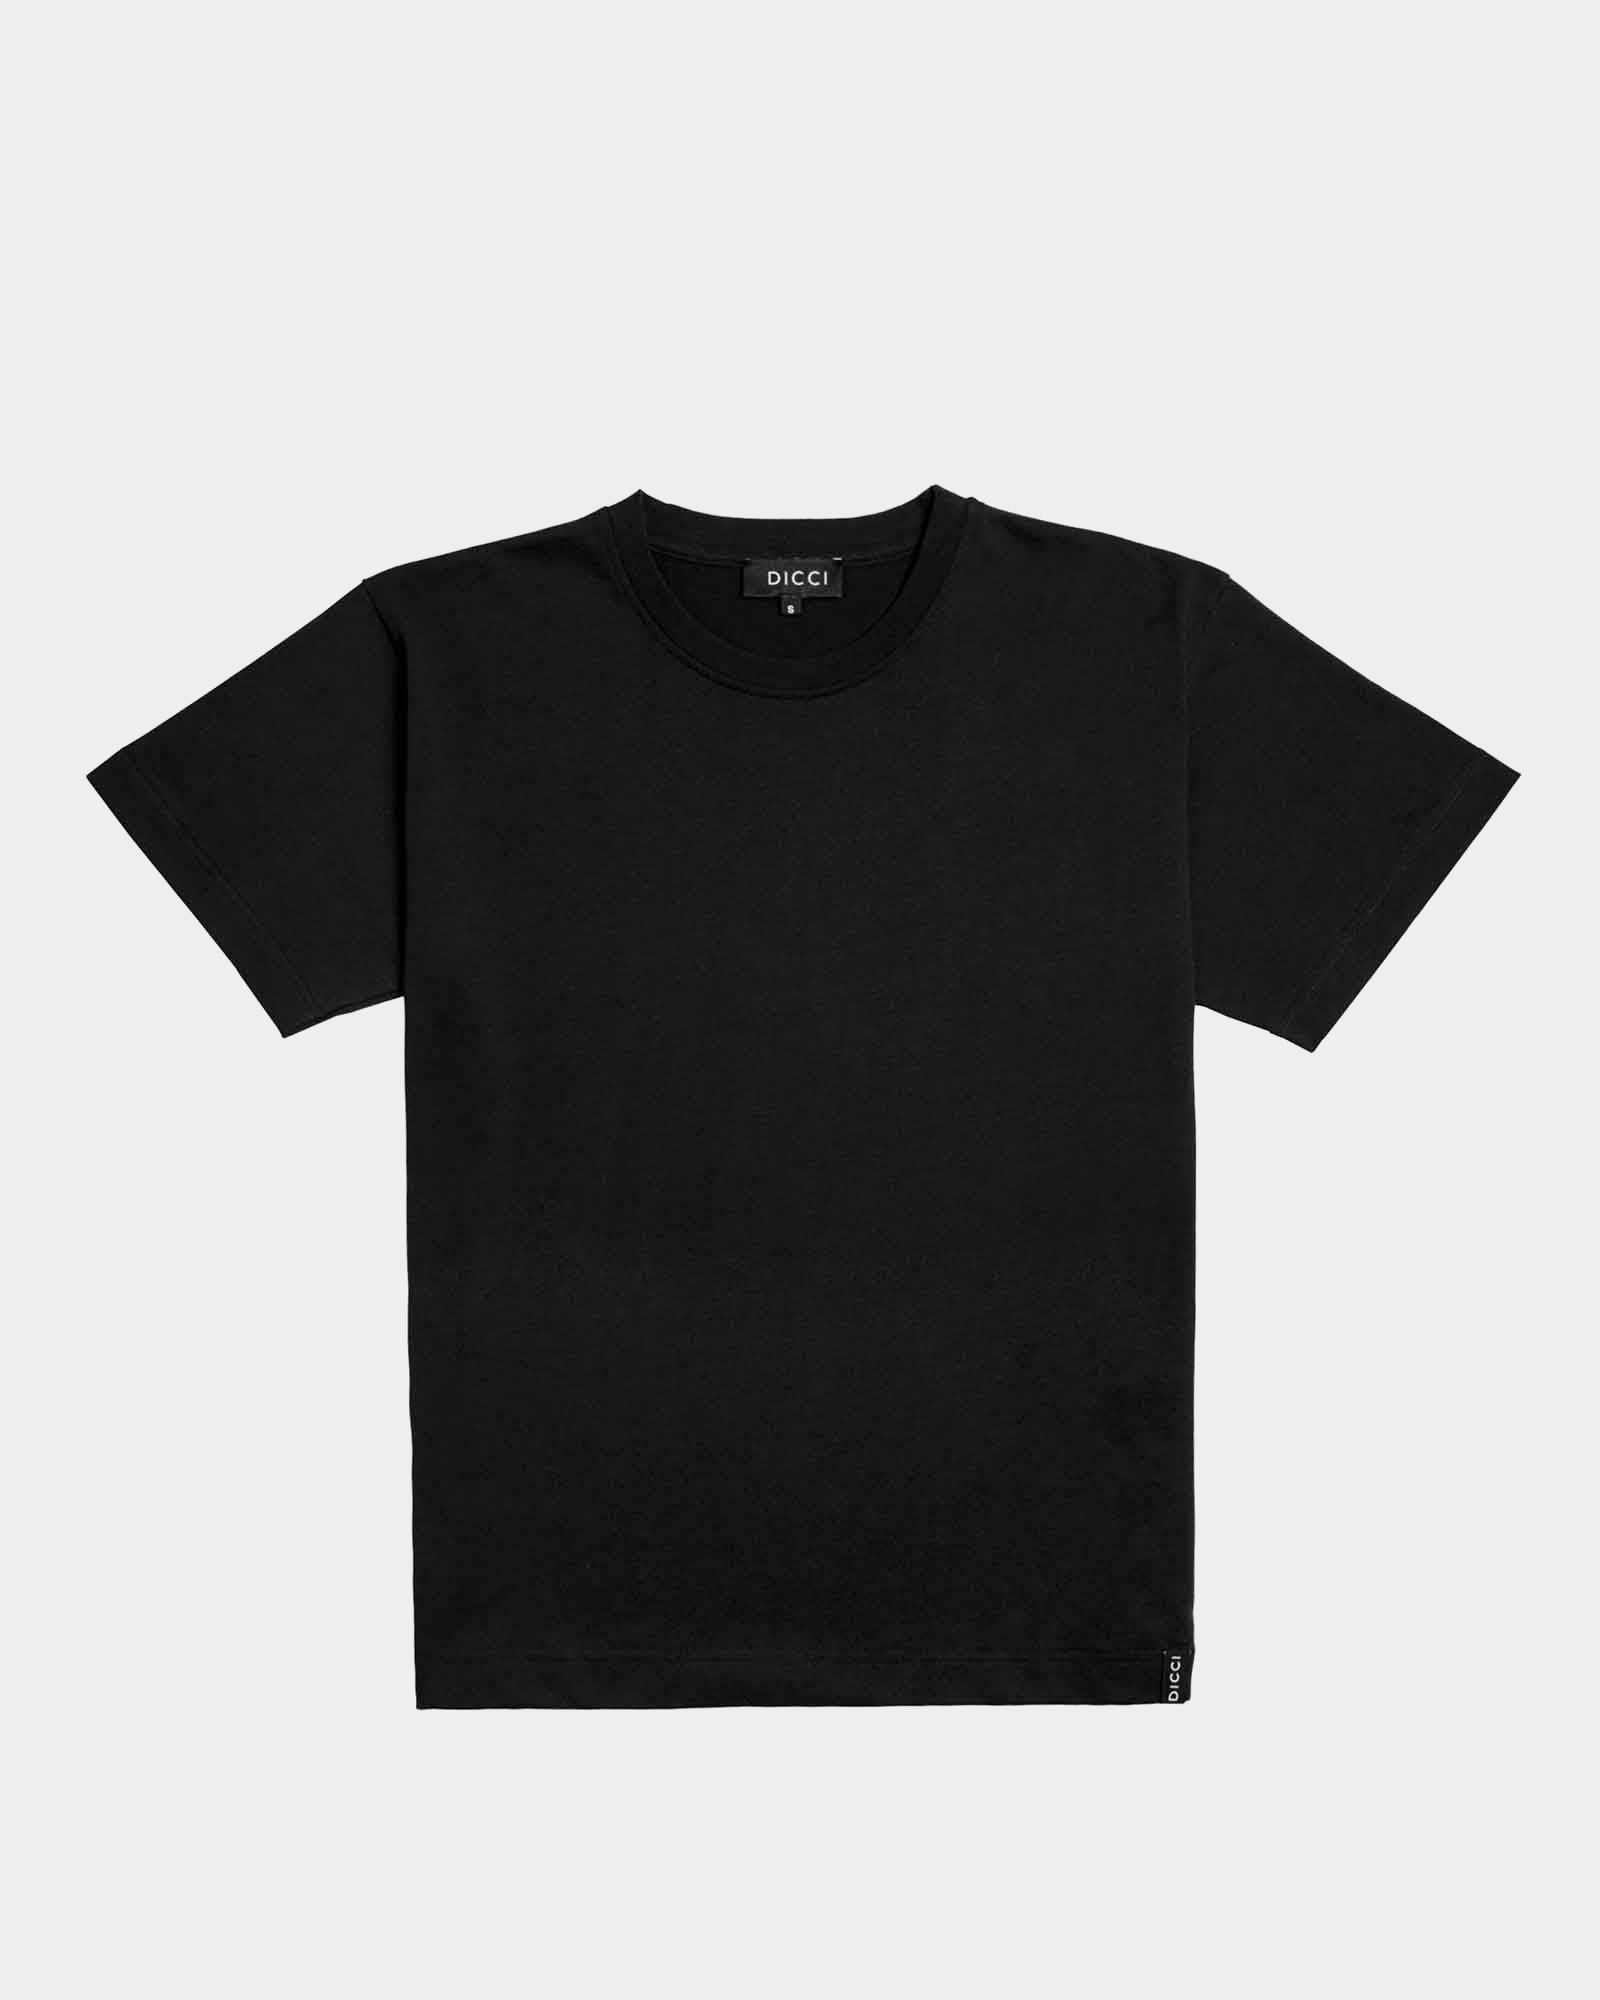 Black Oversize T-shirt - Basic T-shirts Oversize style - Online Clothing - Dicci